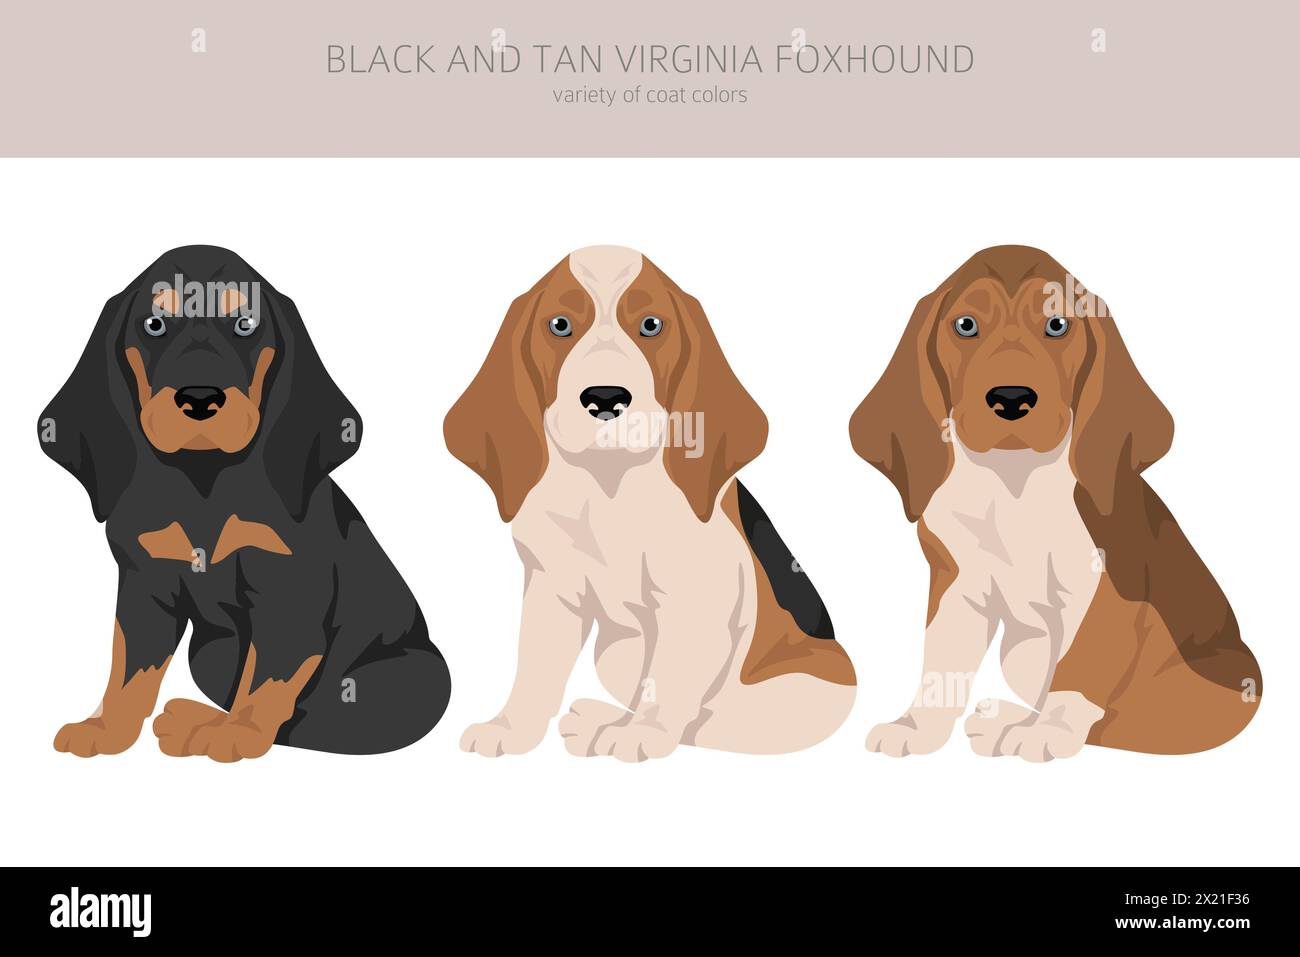 Cucciolo Black and tan Virginia Foxhound Clipart. Diversi colori di rivestimento e pose. Illustrazione vettoriale Illustrazione Vettoriale